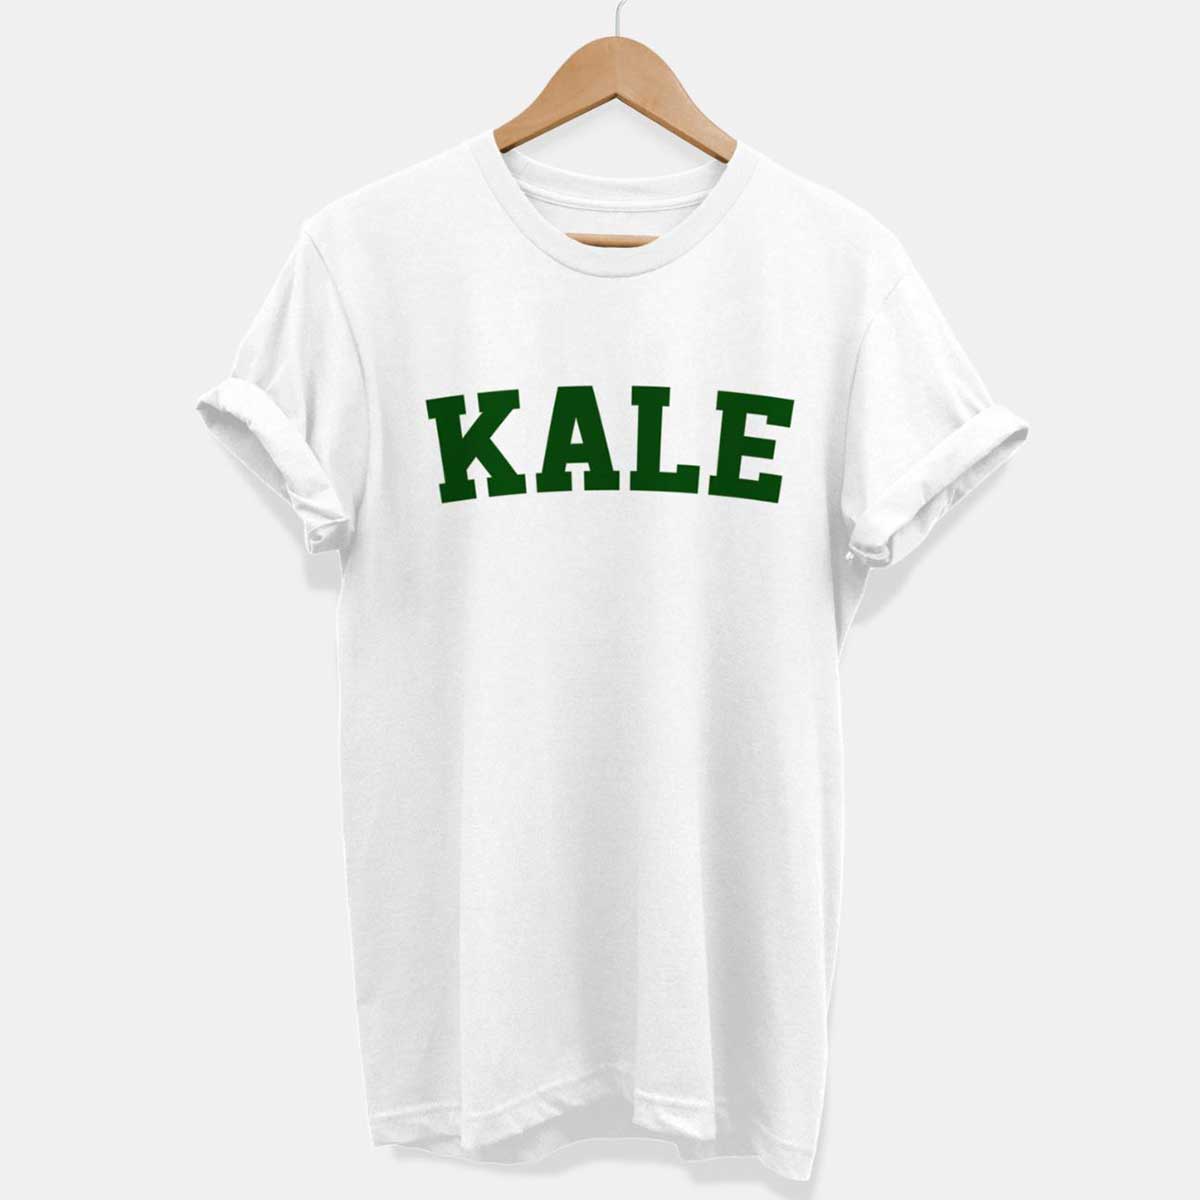 Kale Ethical Vegan T-Shirt (Unisex) product